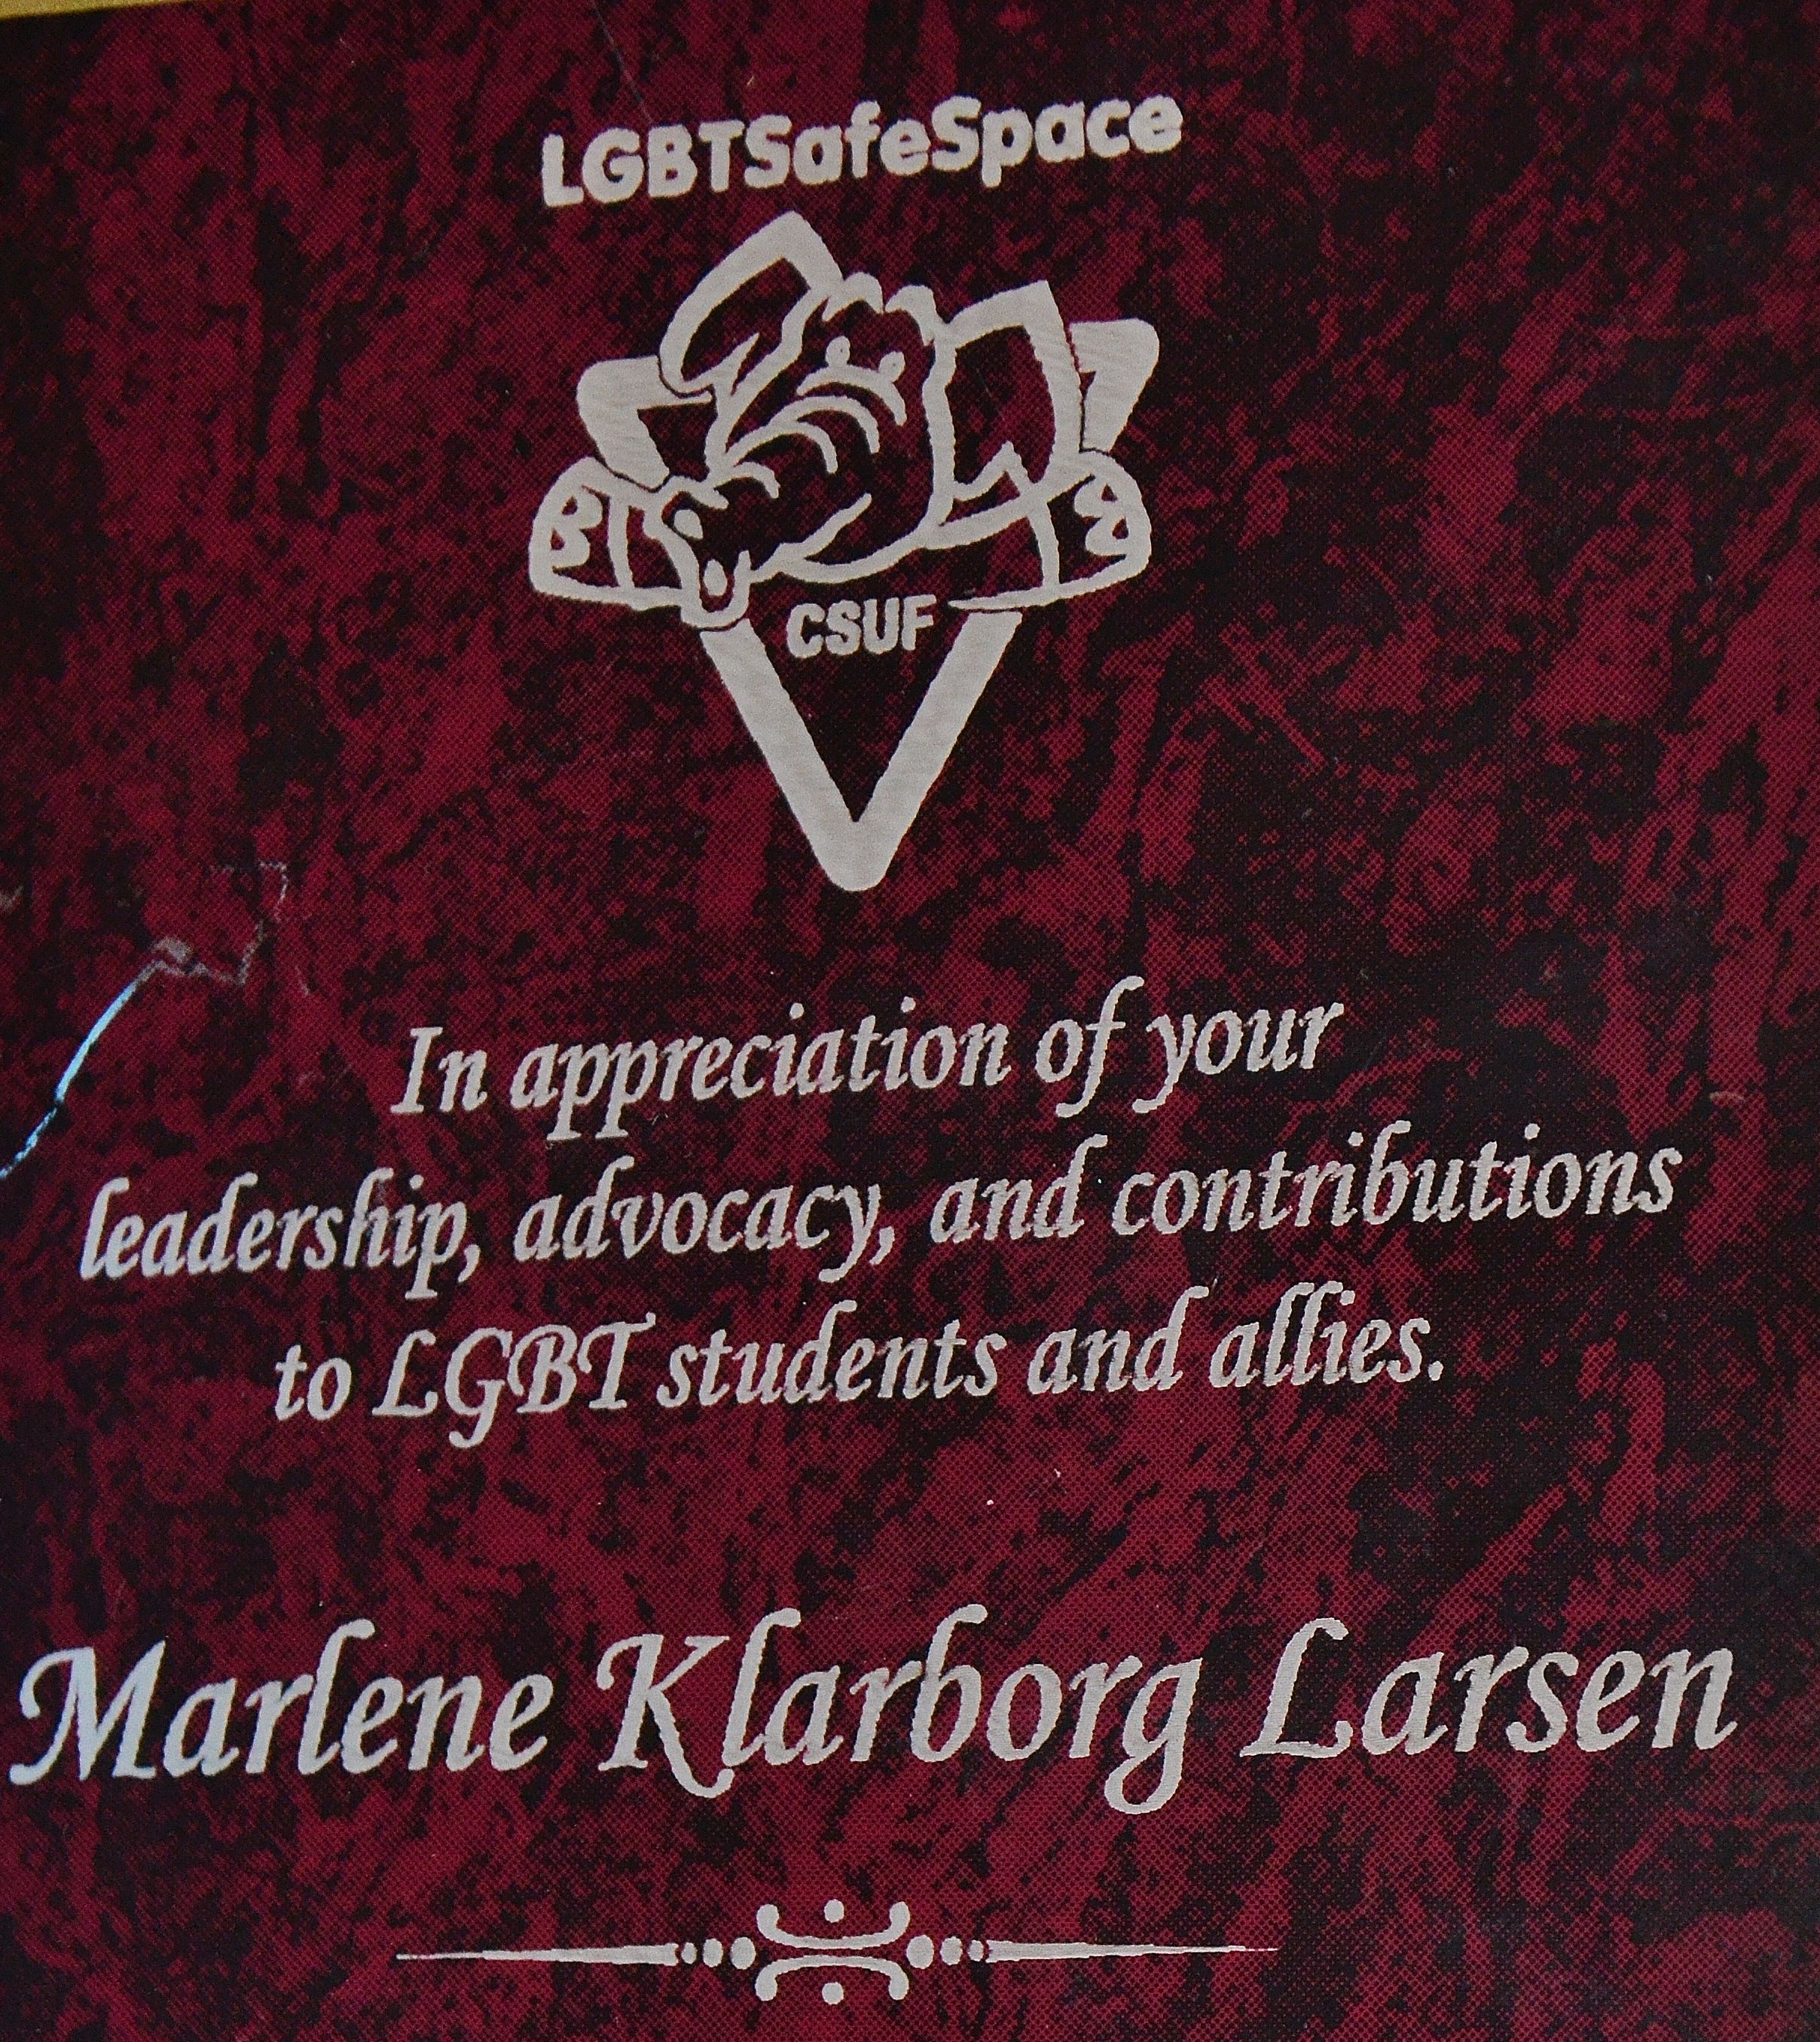 Marlene Klarborg Larsen LGBT Safe Space OC.JPG